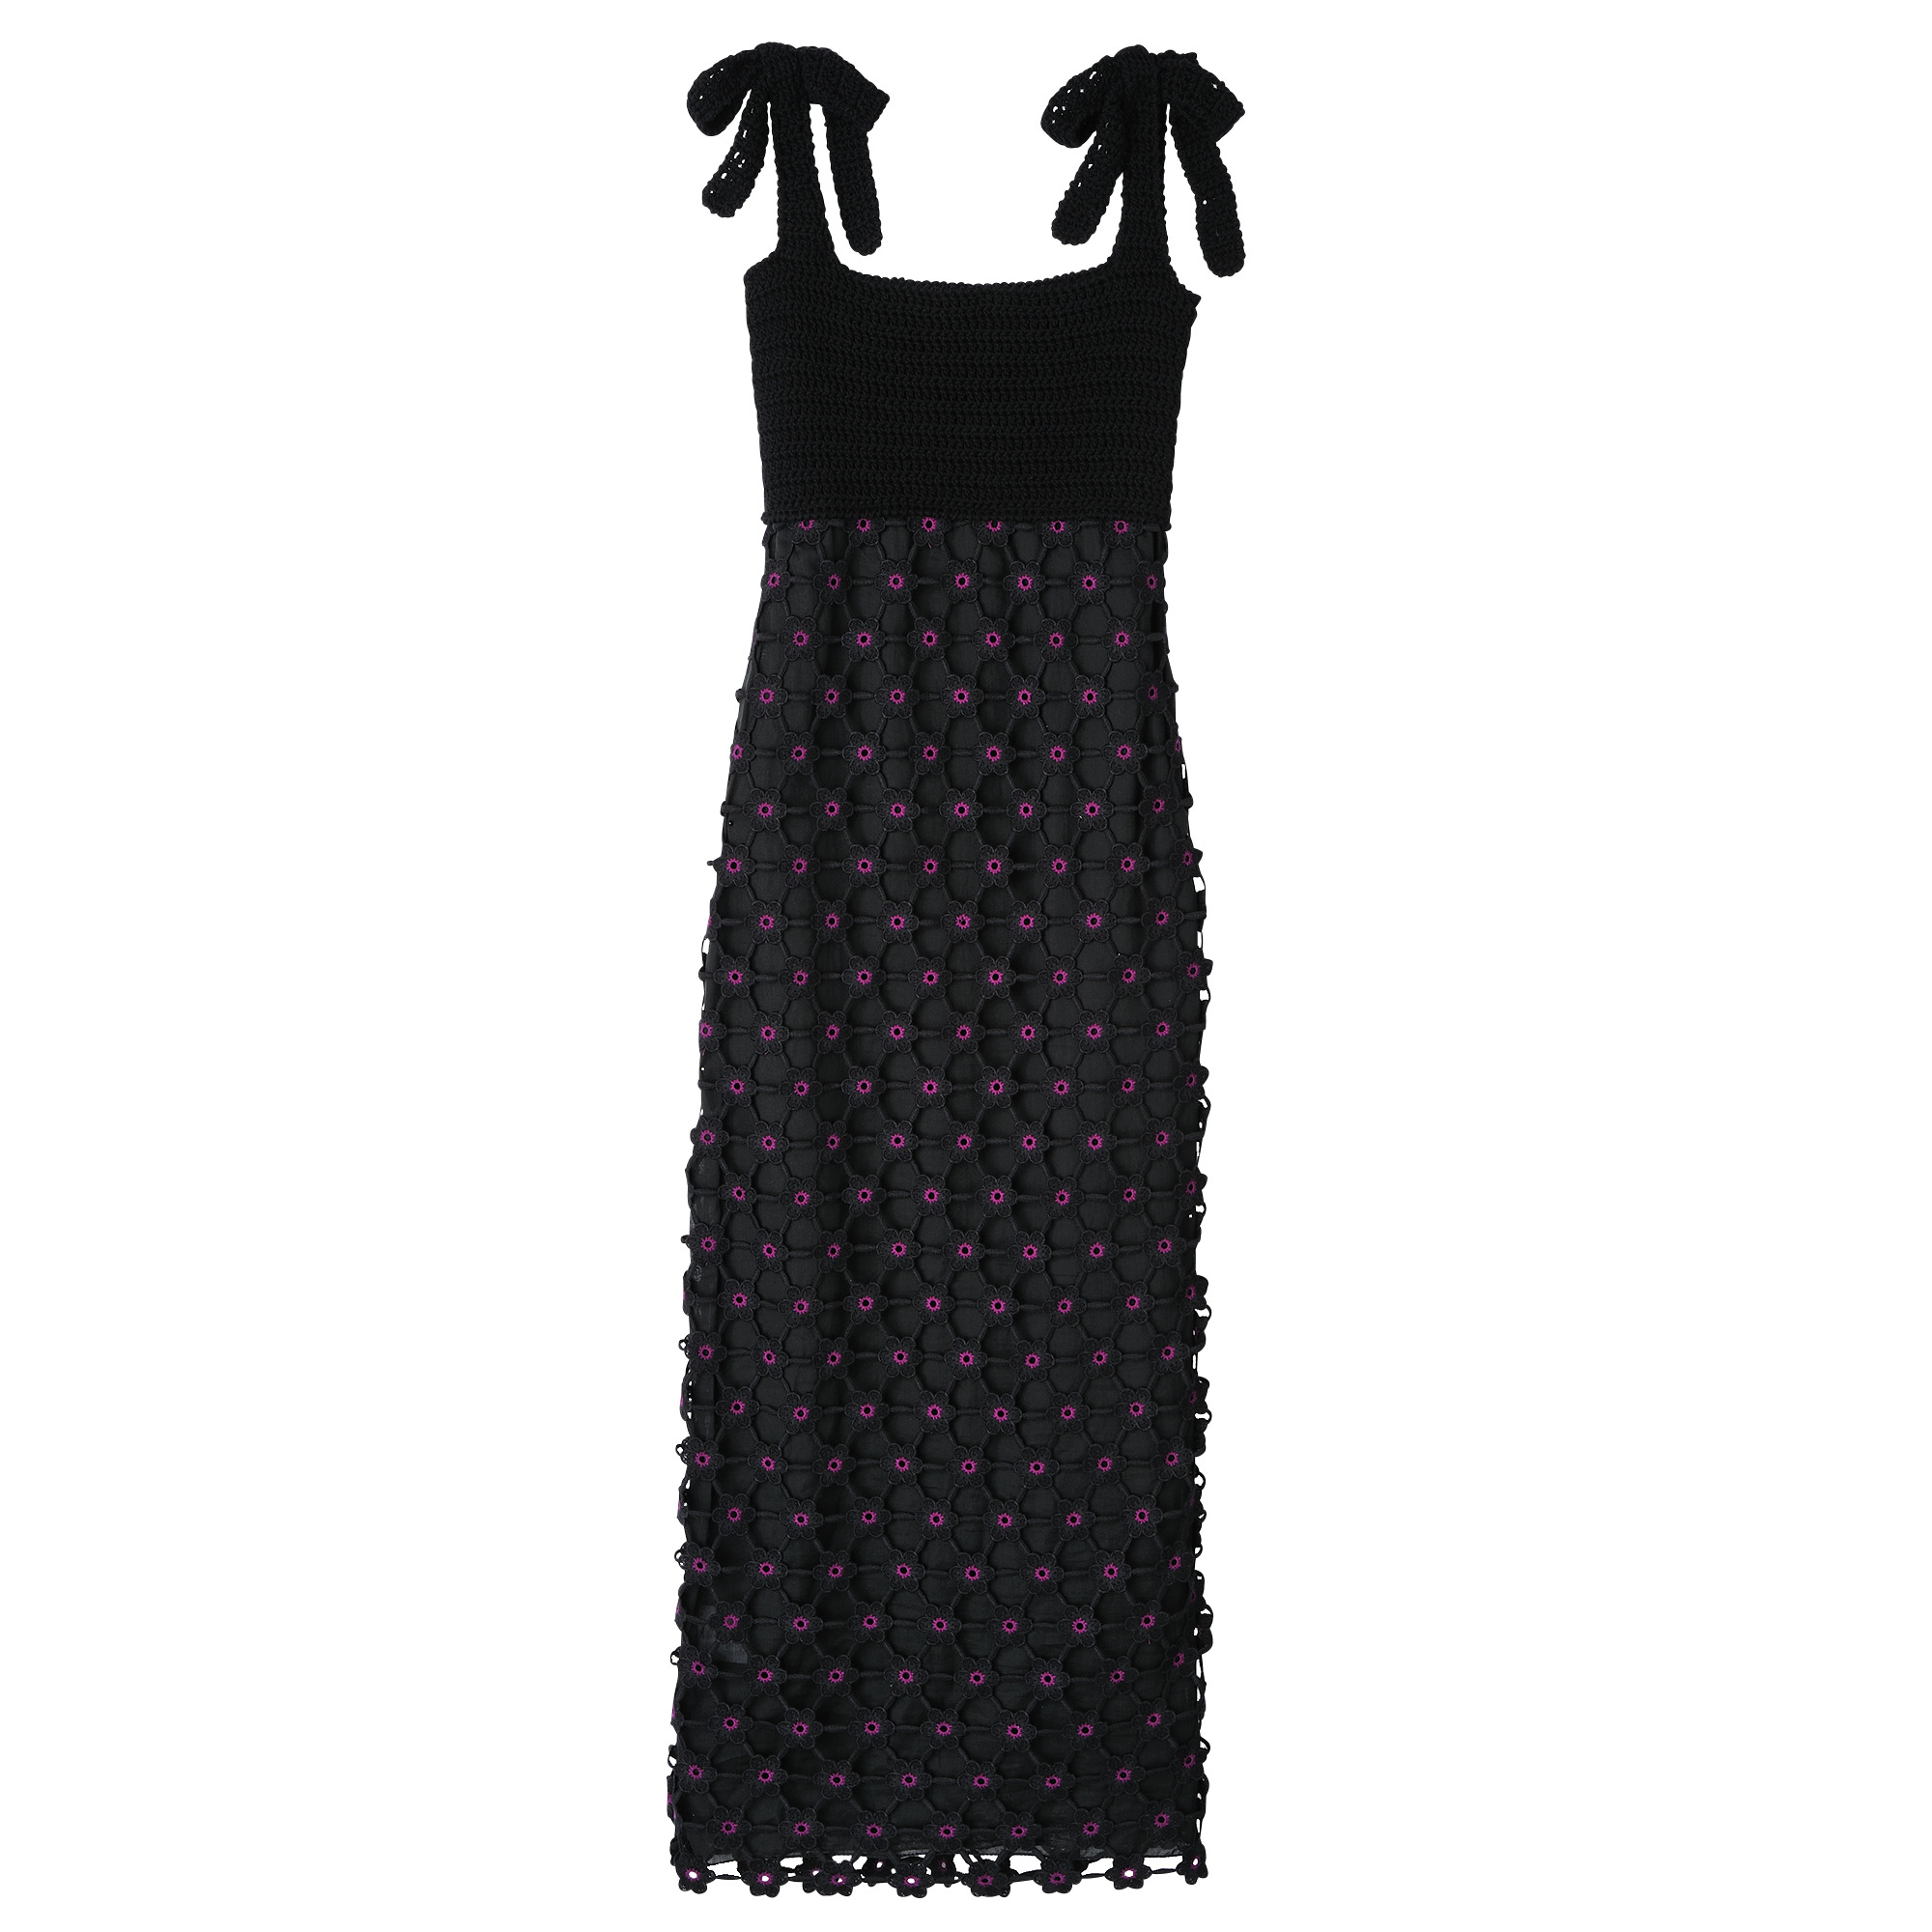 Dress Black - Macramé crochet - 1